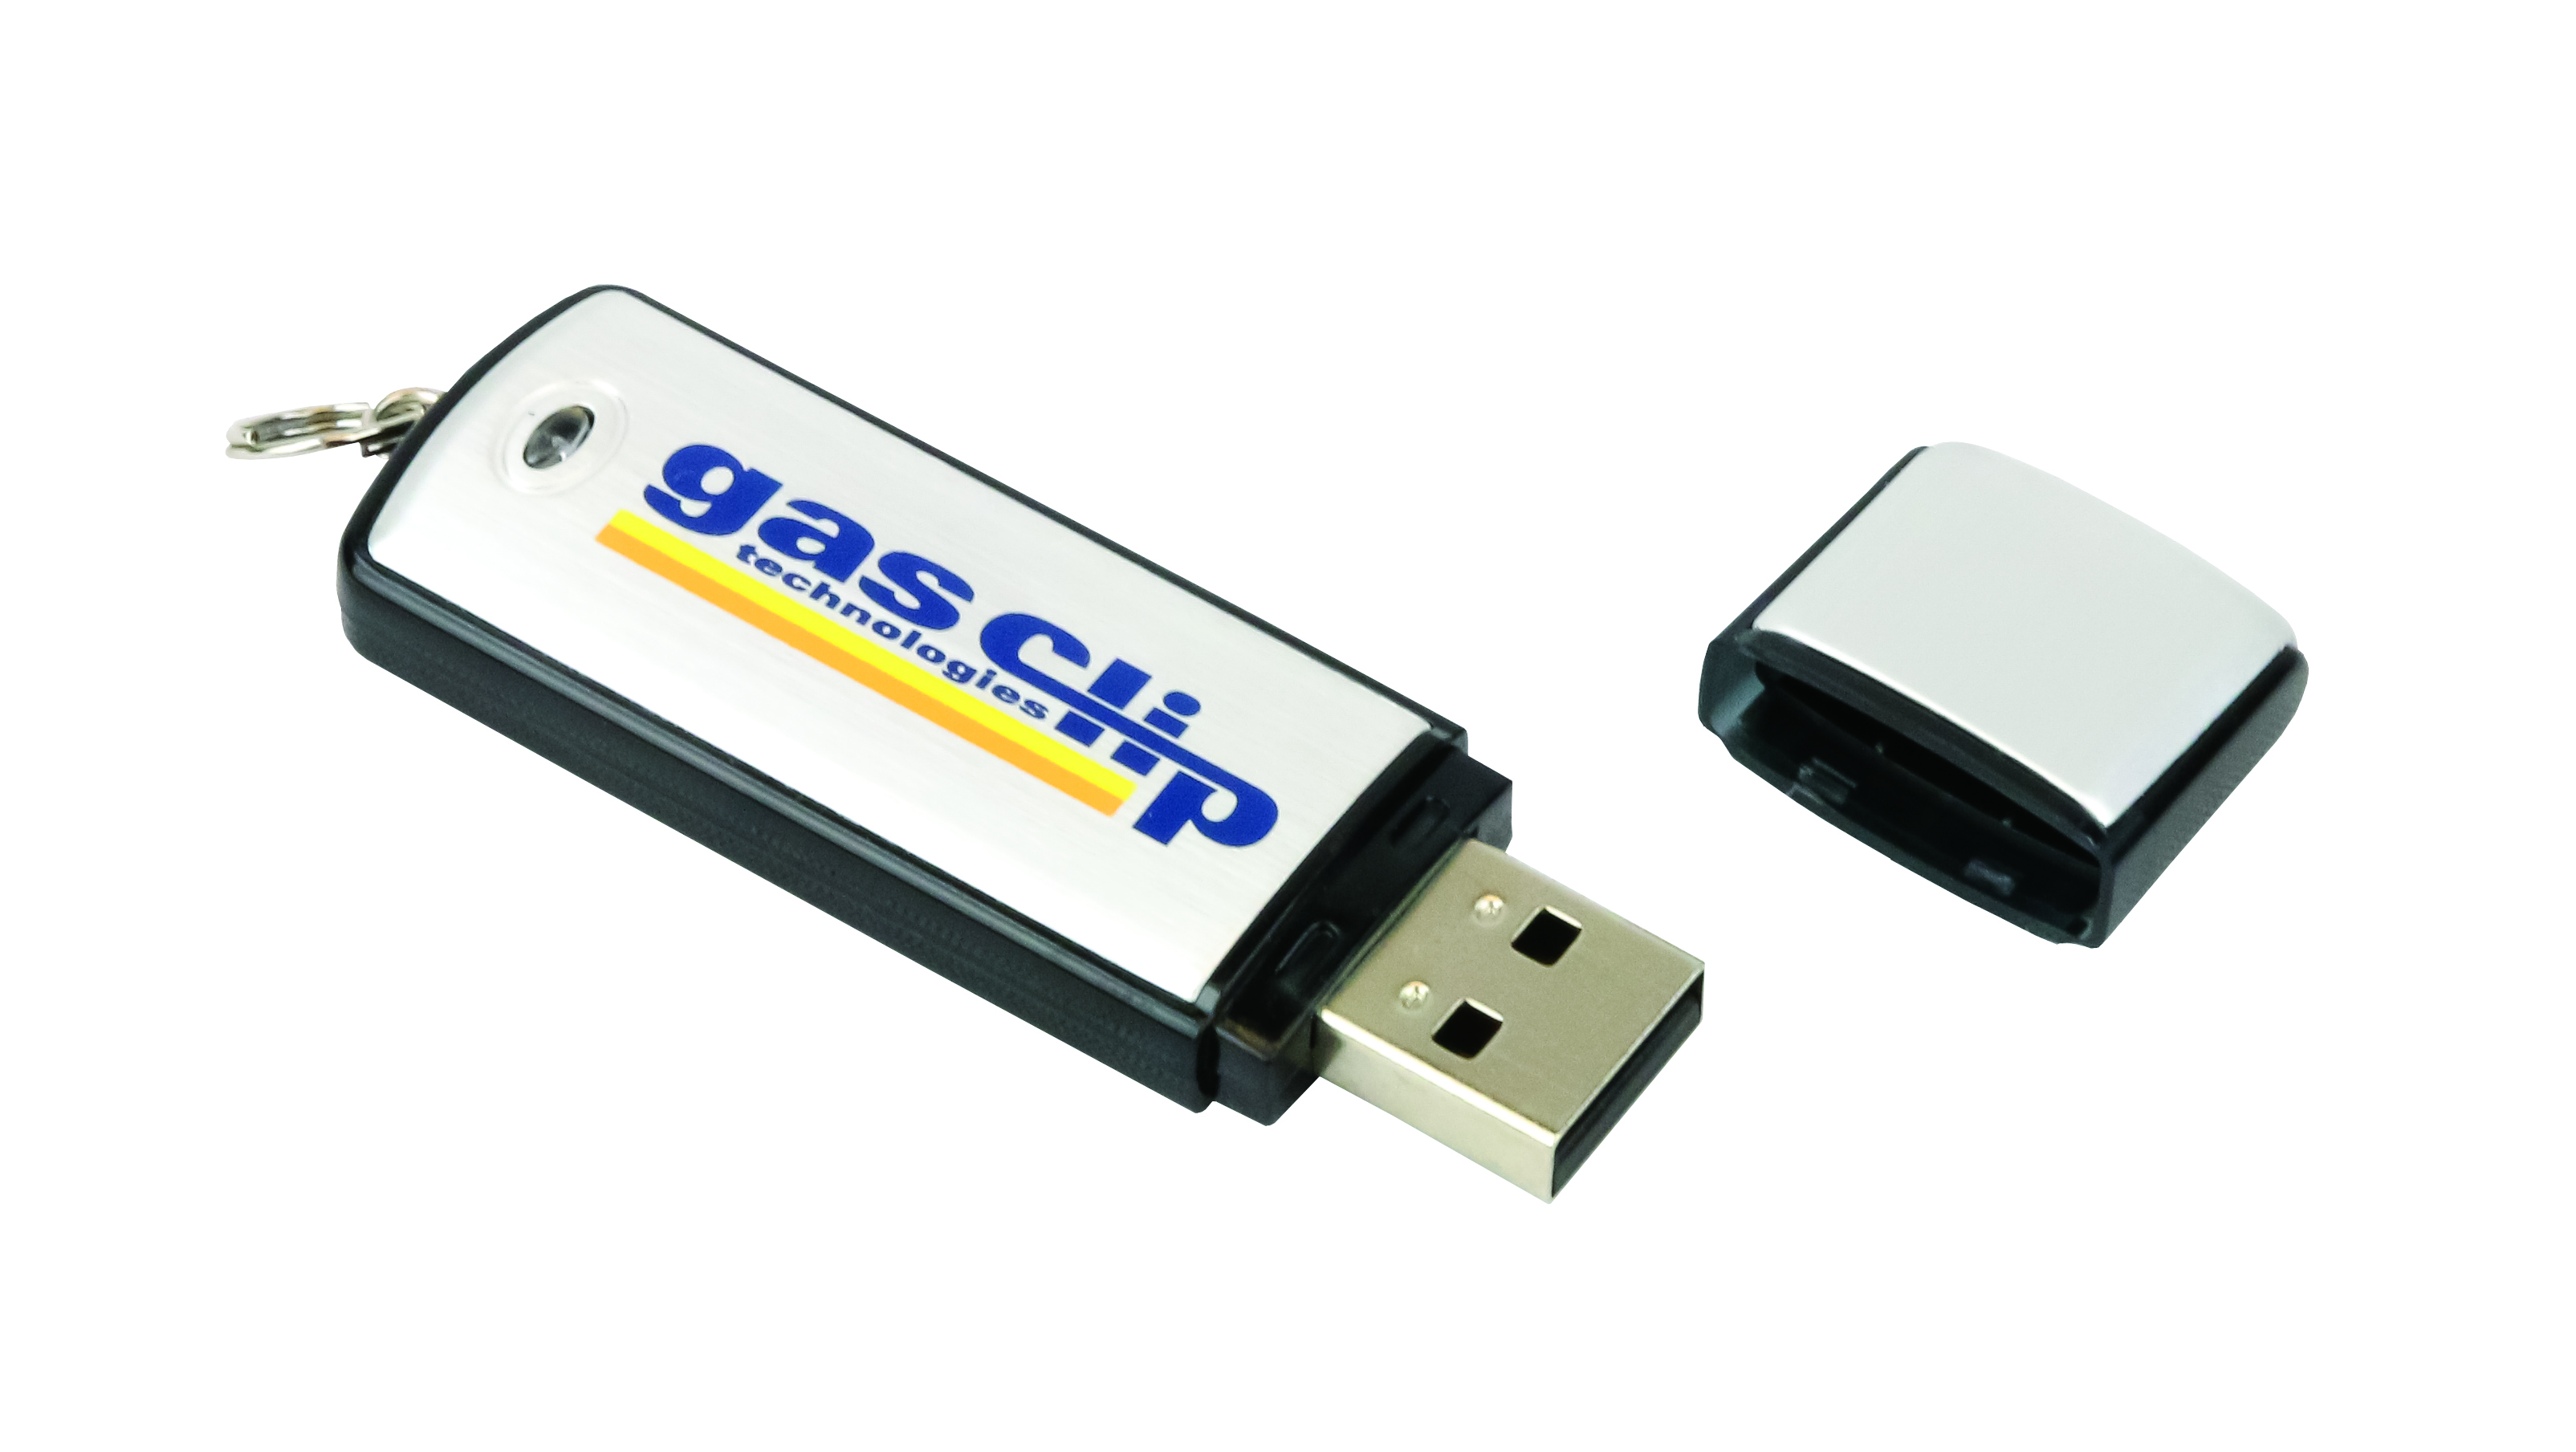 4GB USB Drive